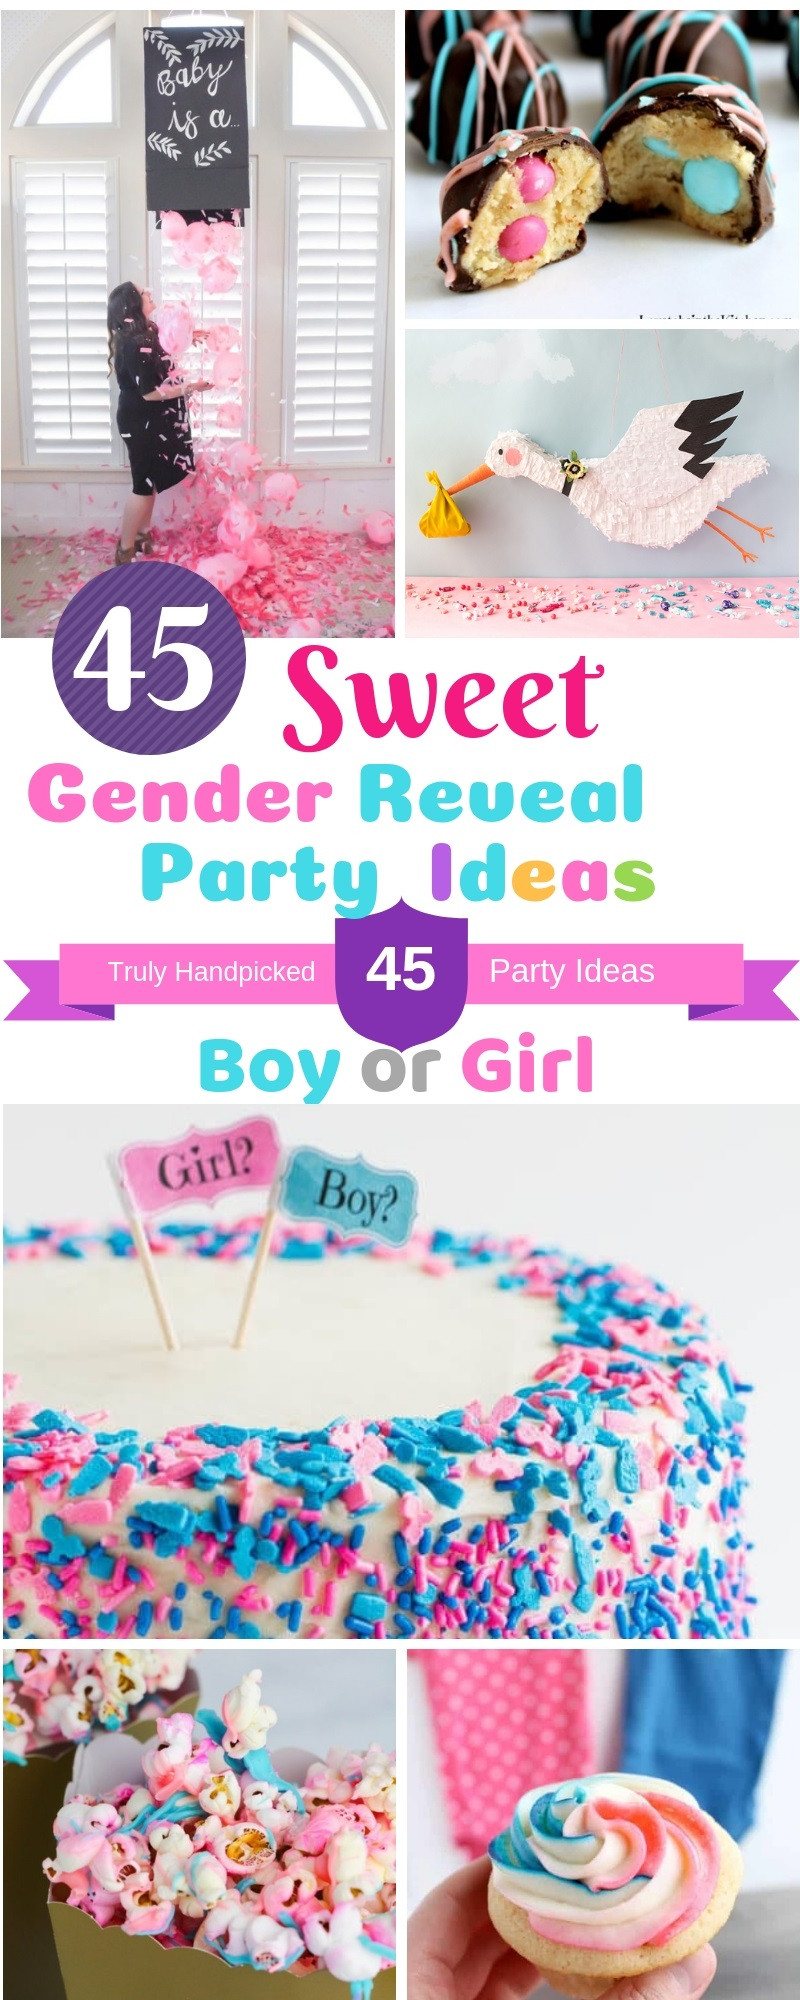 Creative Gender Reveal Party Ideas
 45 DIY Gender Reveal Party Ideas Creative and Sweet Ideas